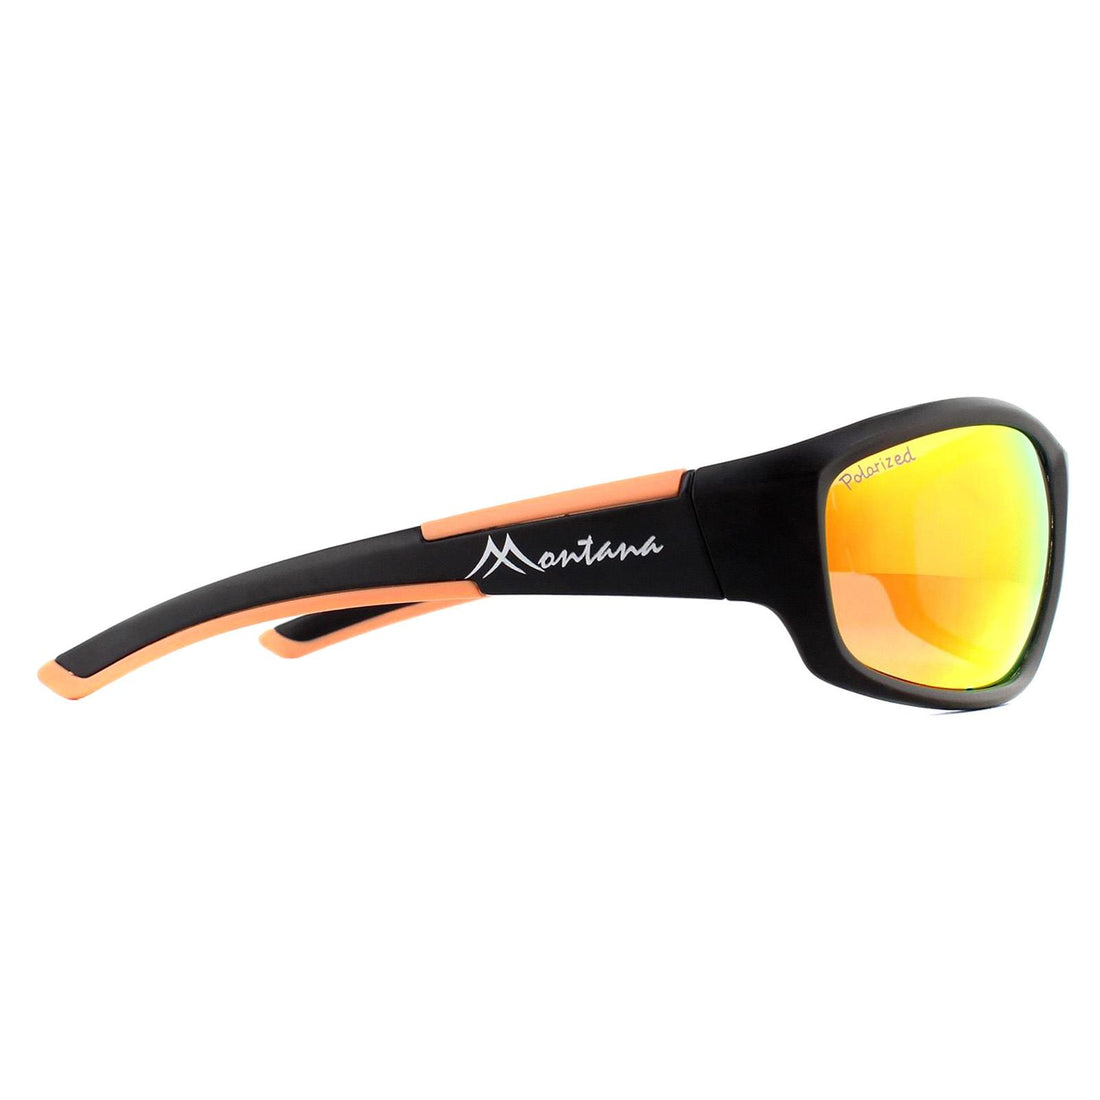 Montana SP311 Sunglasses